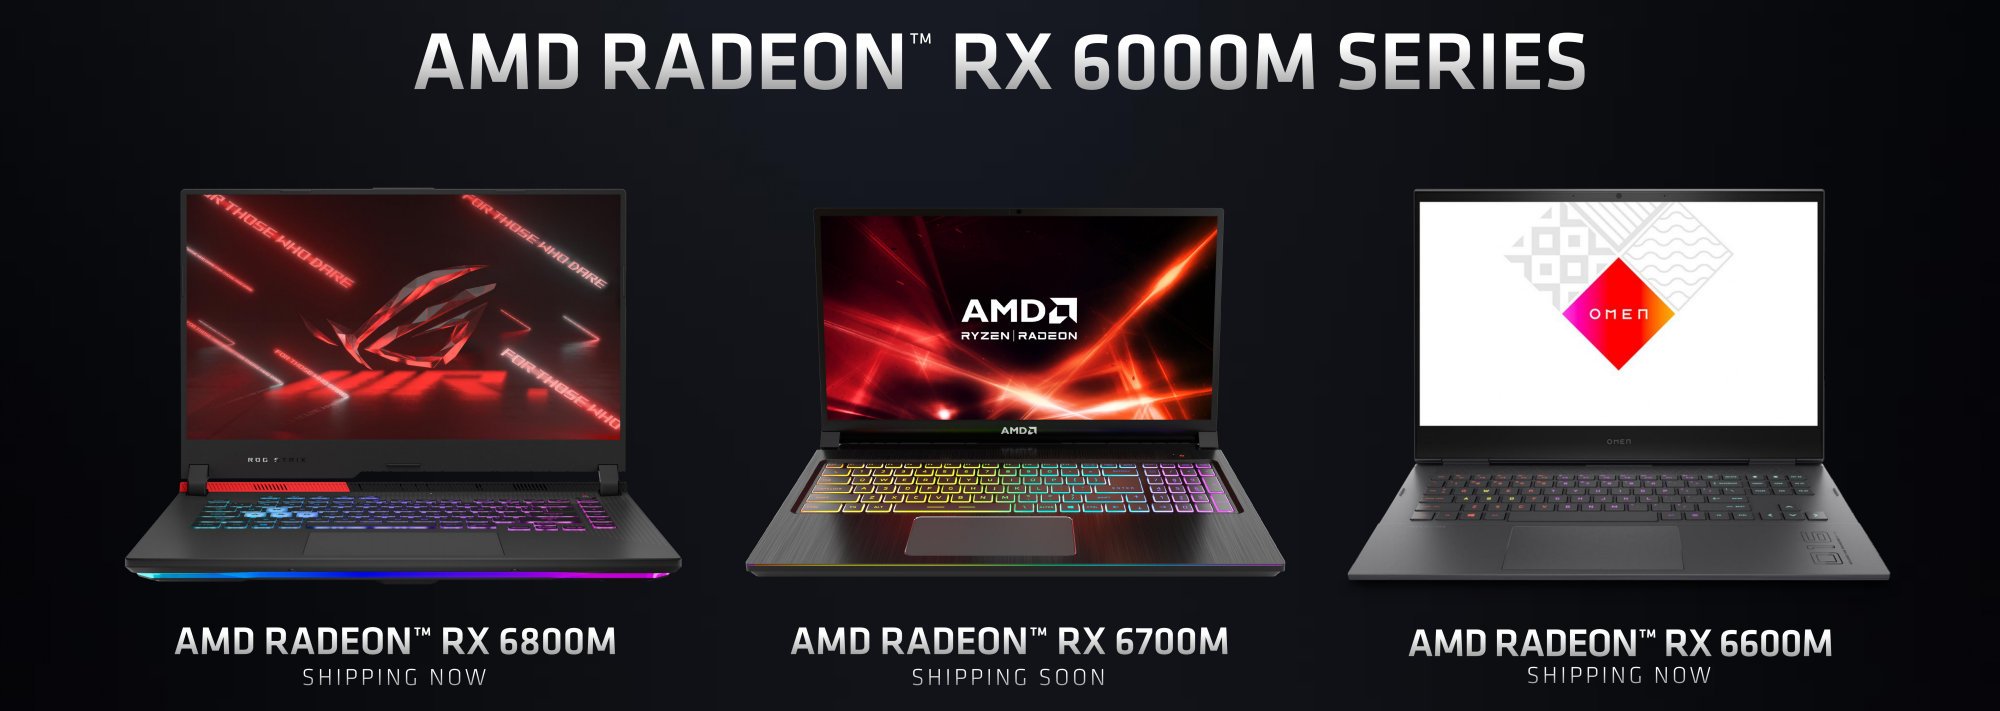 1622529734_AMD_Radeon_RX6000M.jpg